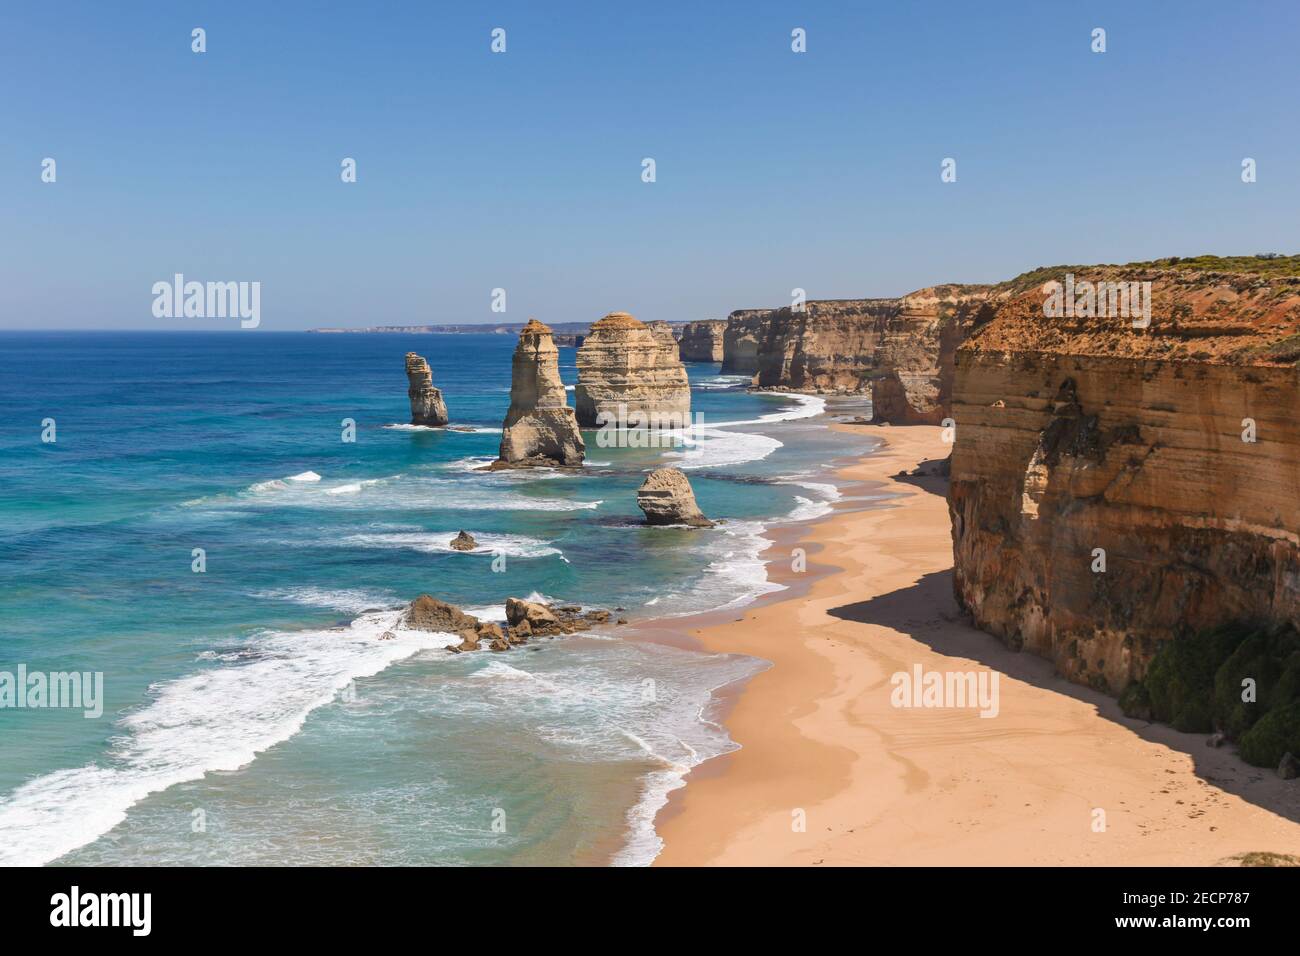 Die zwölf Apostel auf der Great Ocean Road ist ein Berühmtes australisches Wahrzeichen an der Südküste von Victoria - Australien Stockfoto